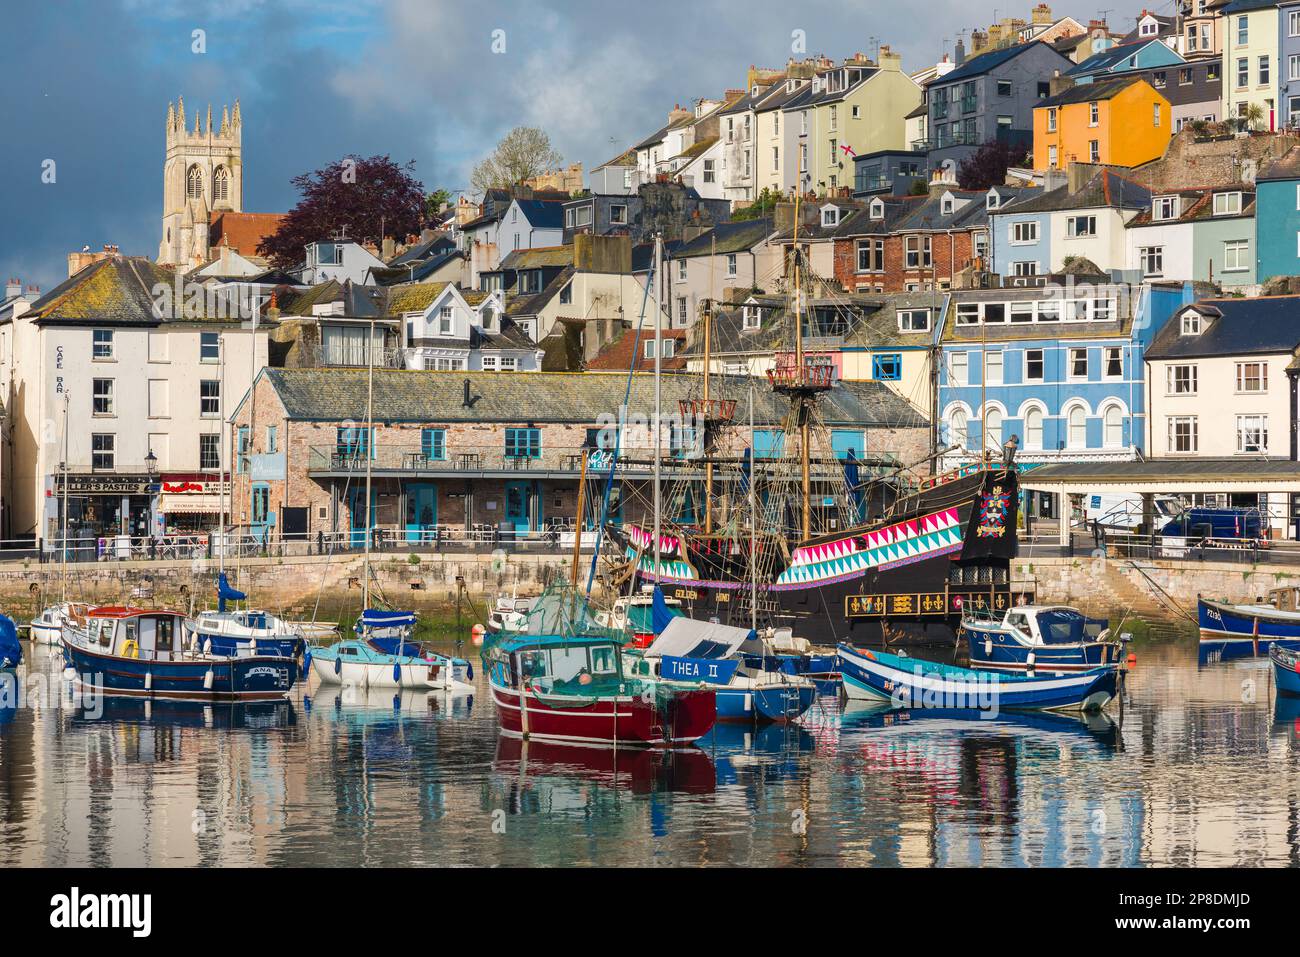 Devon città sul mare, vista delle barche da pesca e una replica della storica Golden Hind nel porto di Brixham, Torbay, Devon, Inghilterra sud-occidentale, Regno Unito Foto Stock